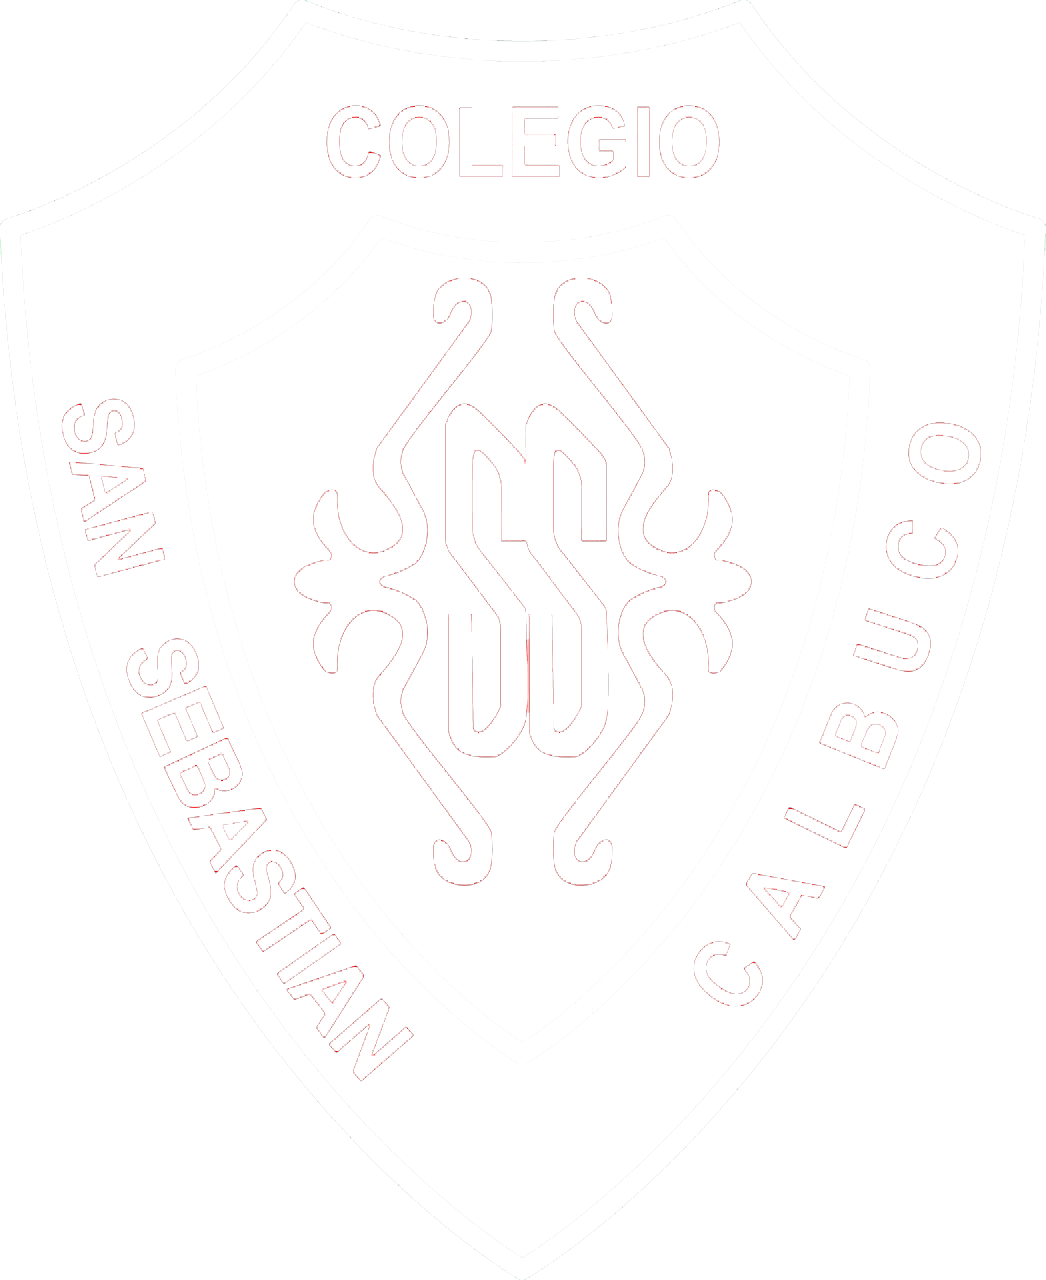 Colegio San Sebastián Calbuco